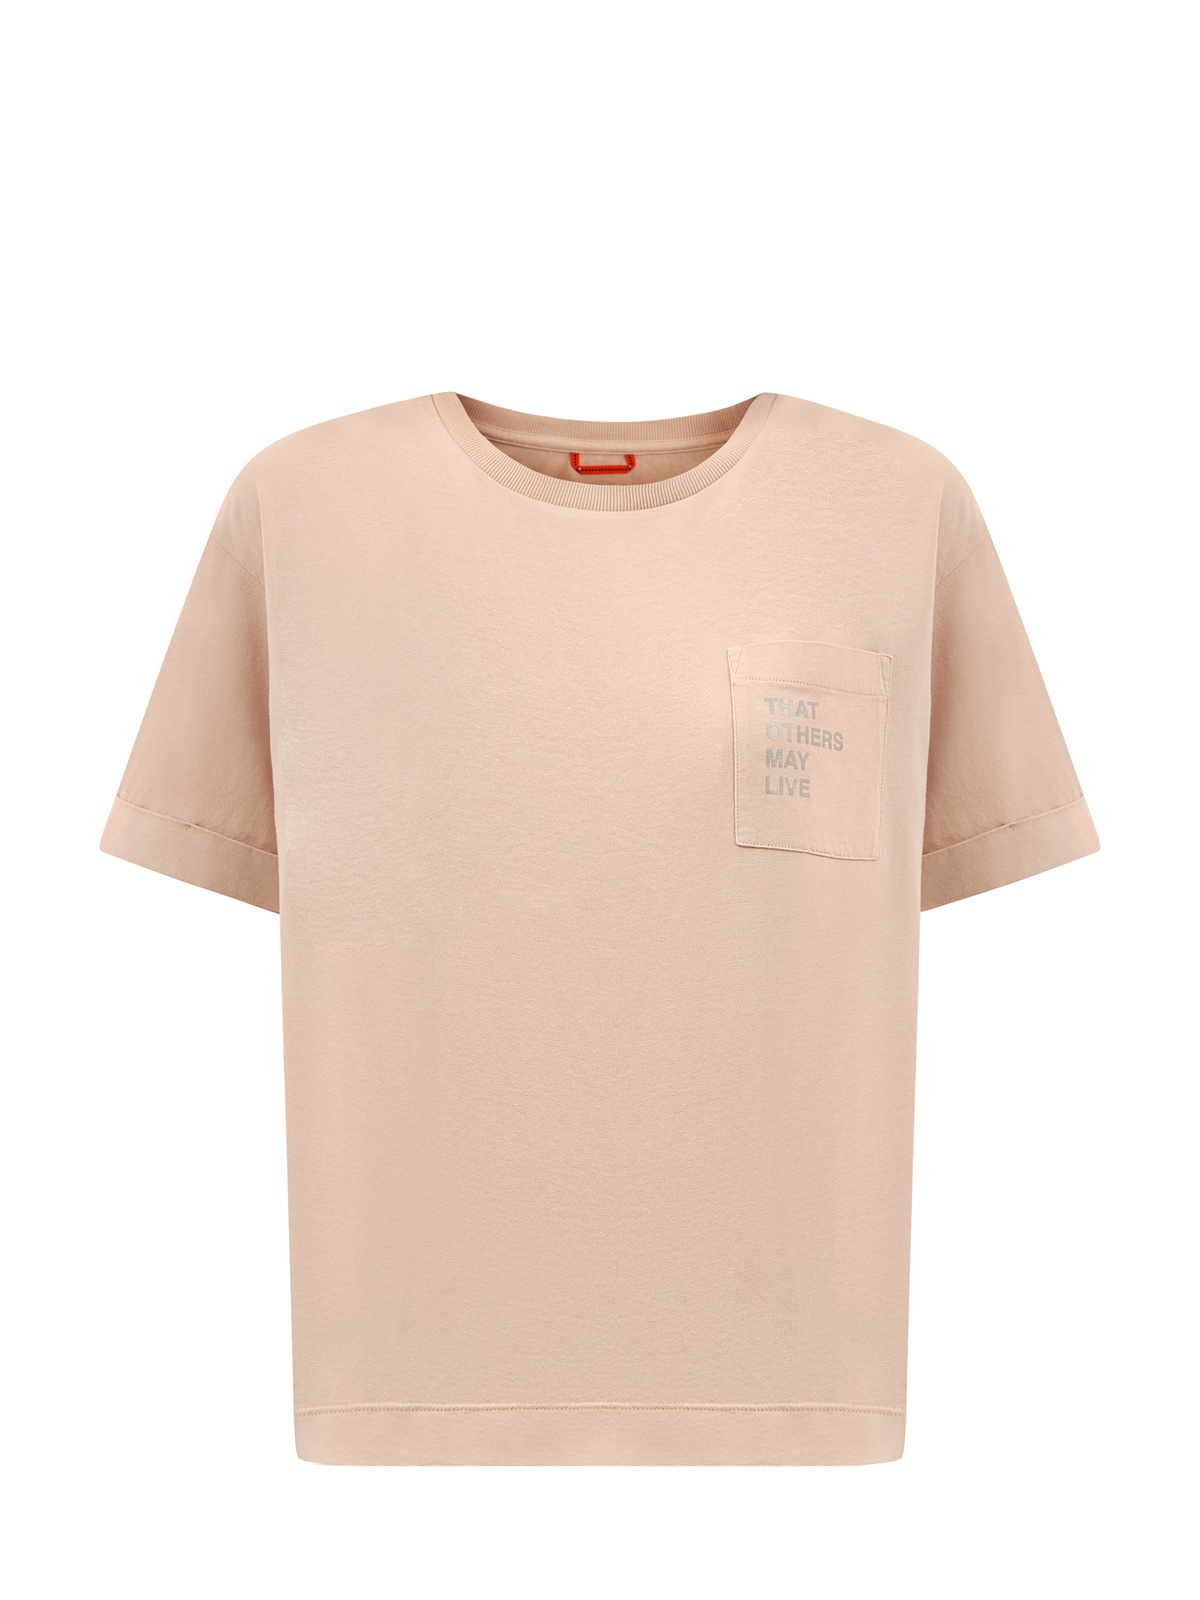 Свободная футболка из окрашенного вручную джерси с принтом PARAJUMPERS, цвет бежевый, размер XS;S;M;L - фото 1